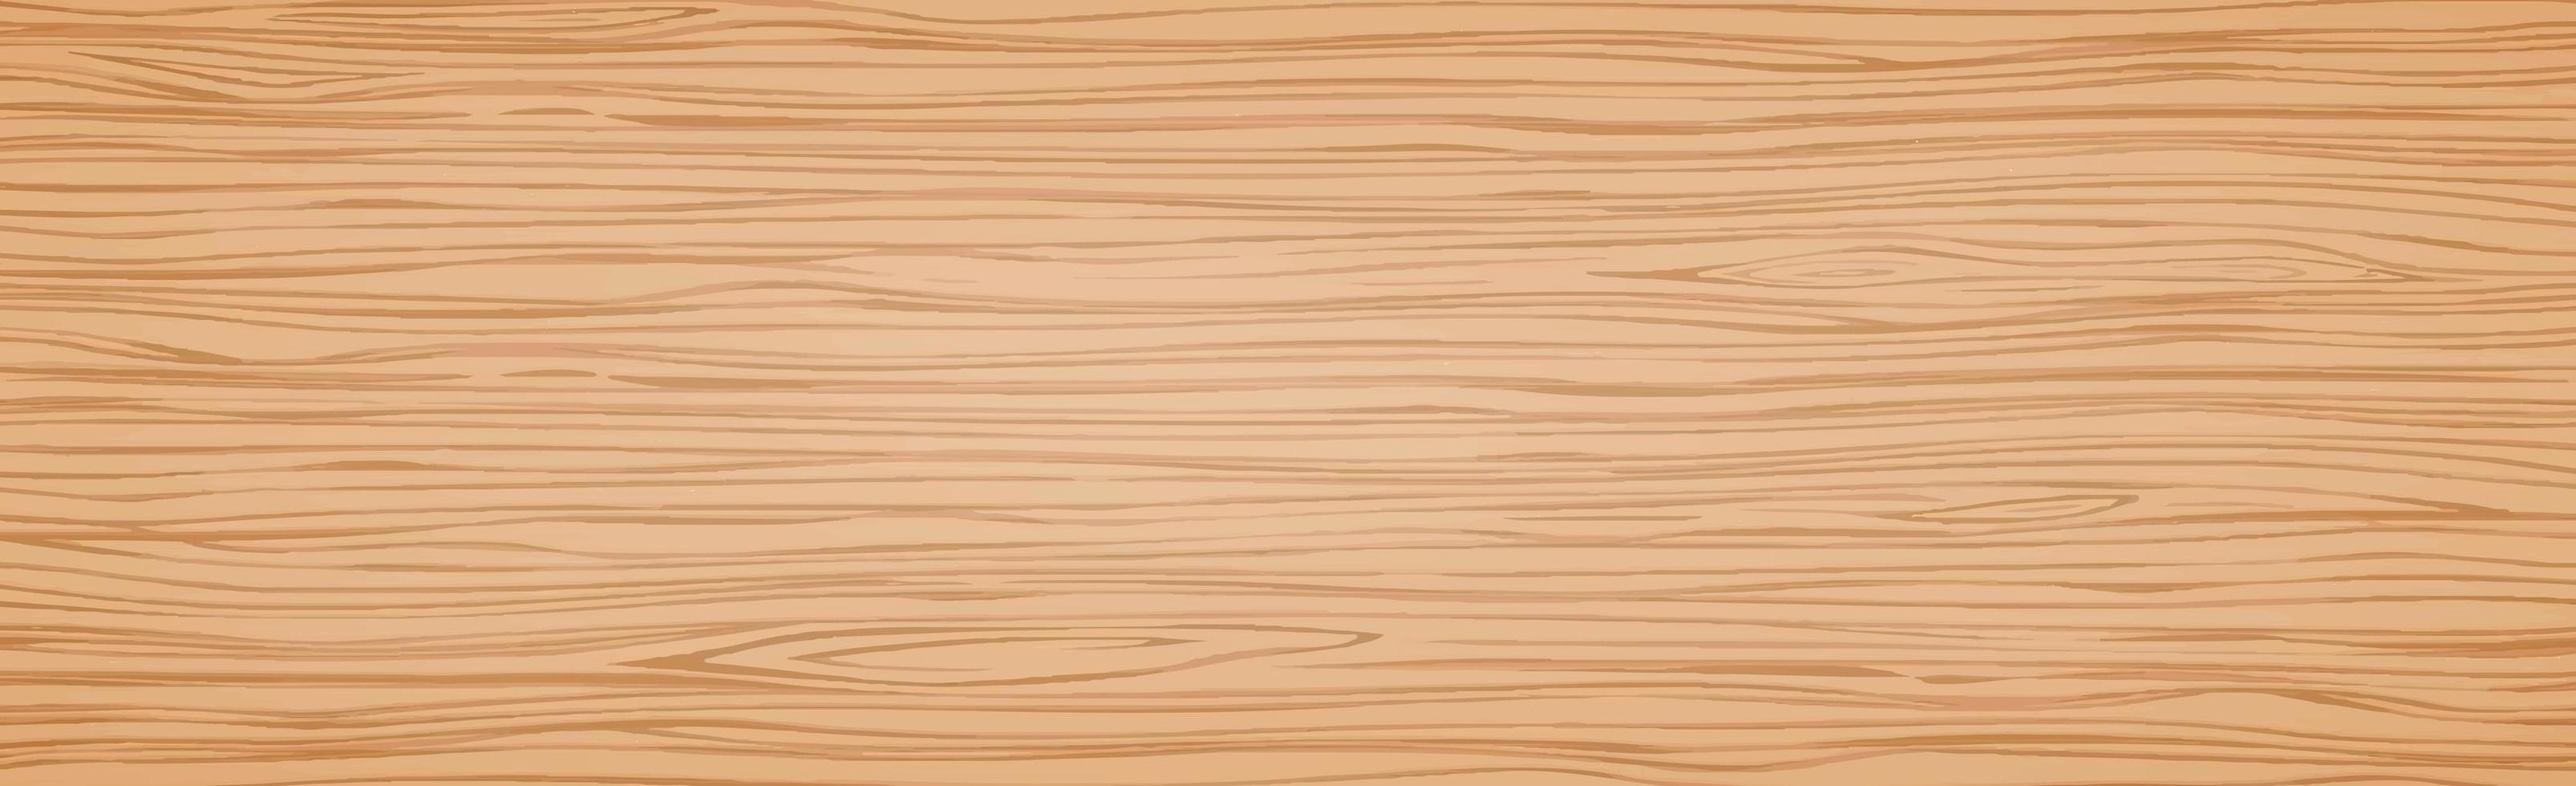 padrão de textura realista de madeira escura, fundo - vetor